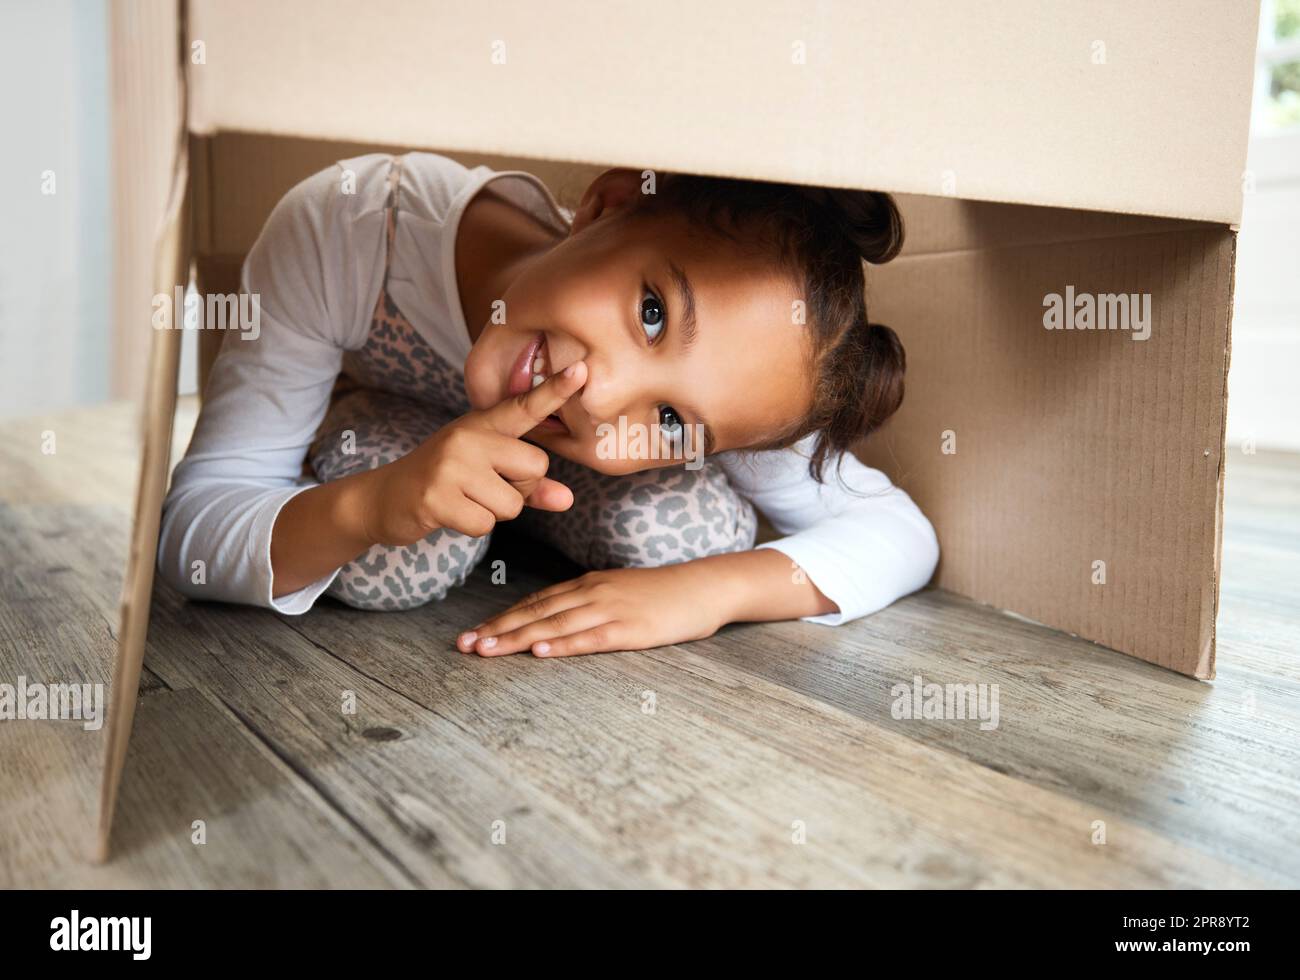 Portrait d'une petite fille hispanique mignonne jouant avec une boîte en carton dans un nouvel appartement. Jolie fille de race mixte se cachant dans une boîte et souriant dans une maison. Déménagement et jour de déménagement de la grande famille Banque D'Images